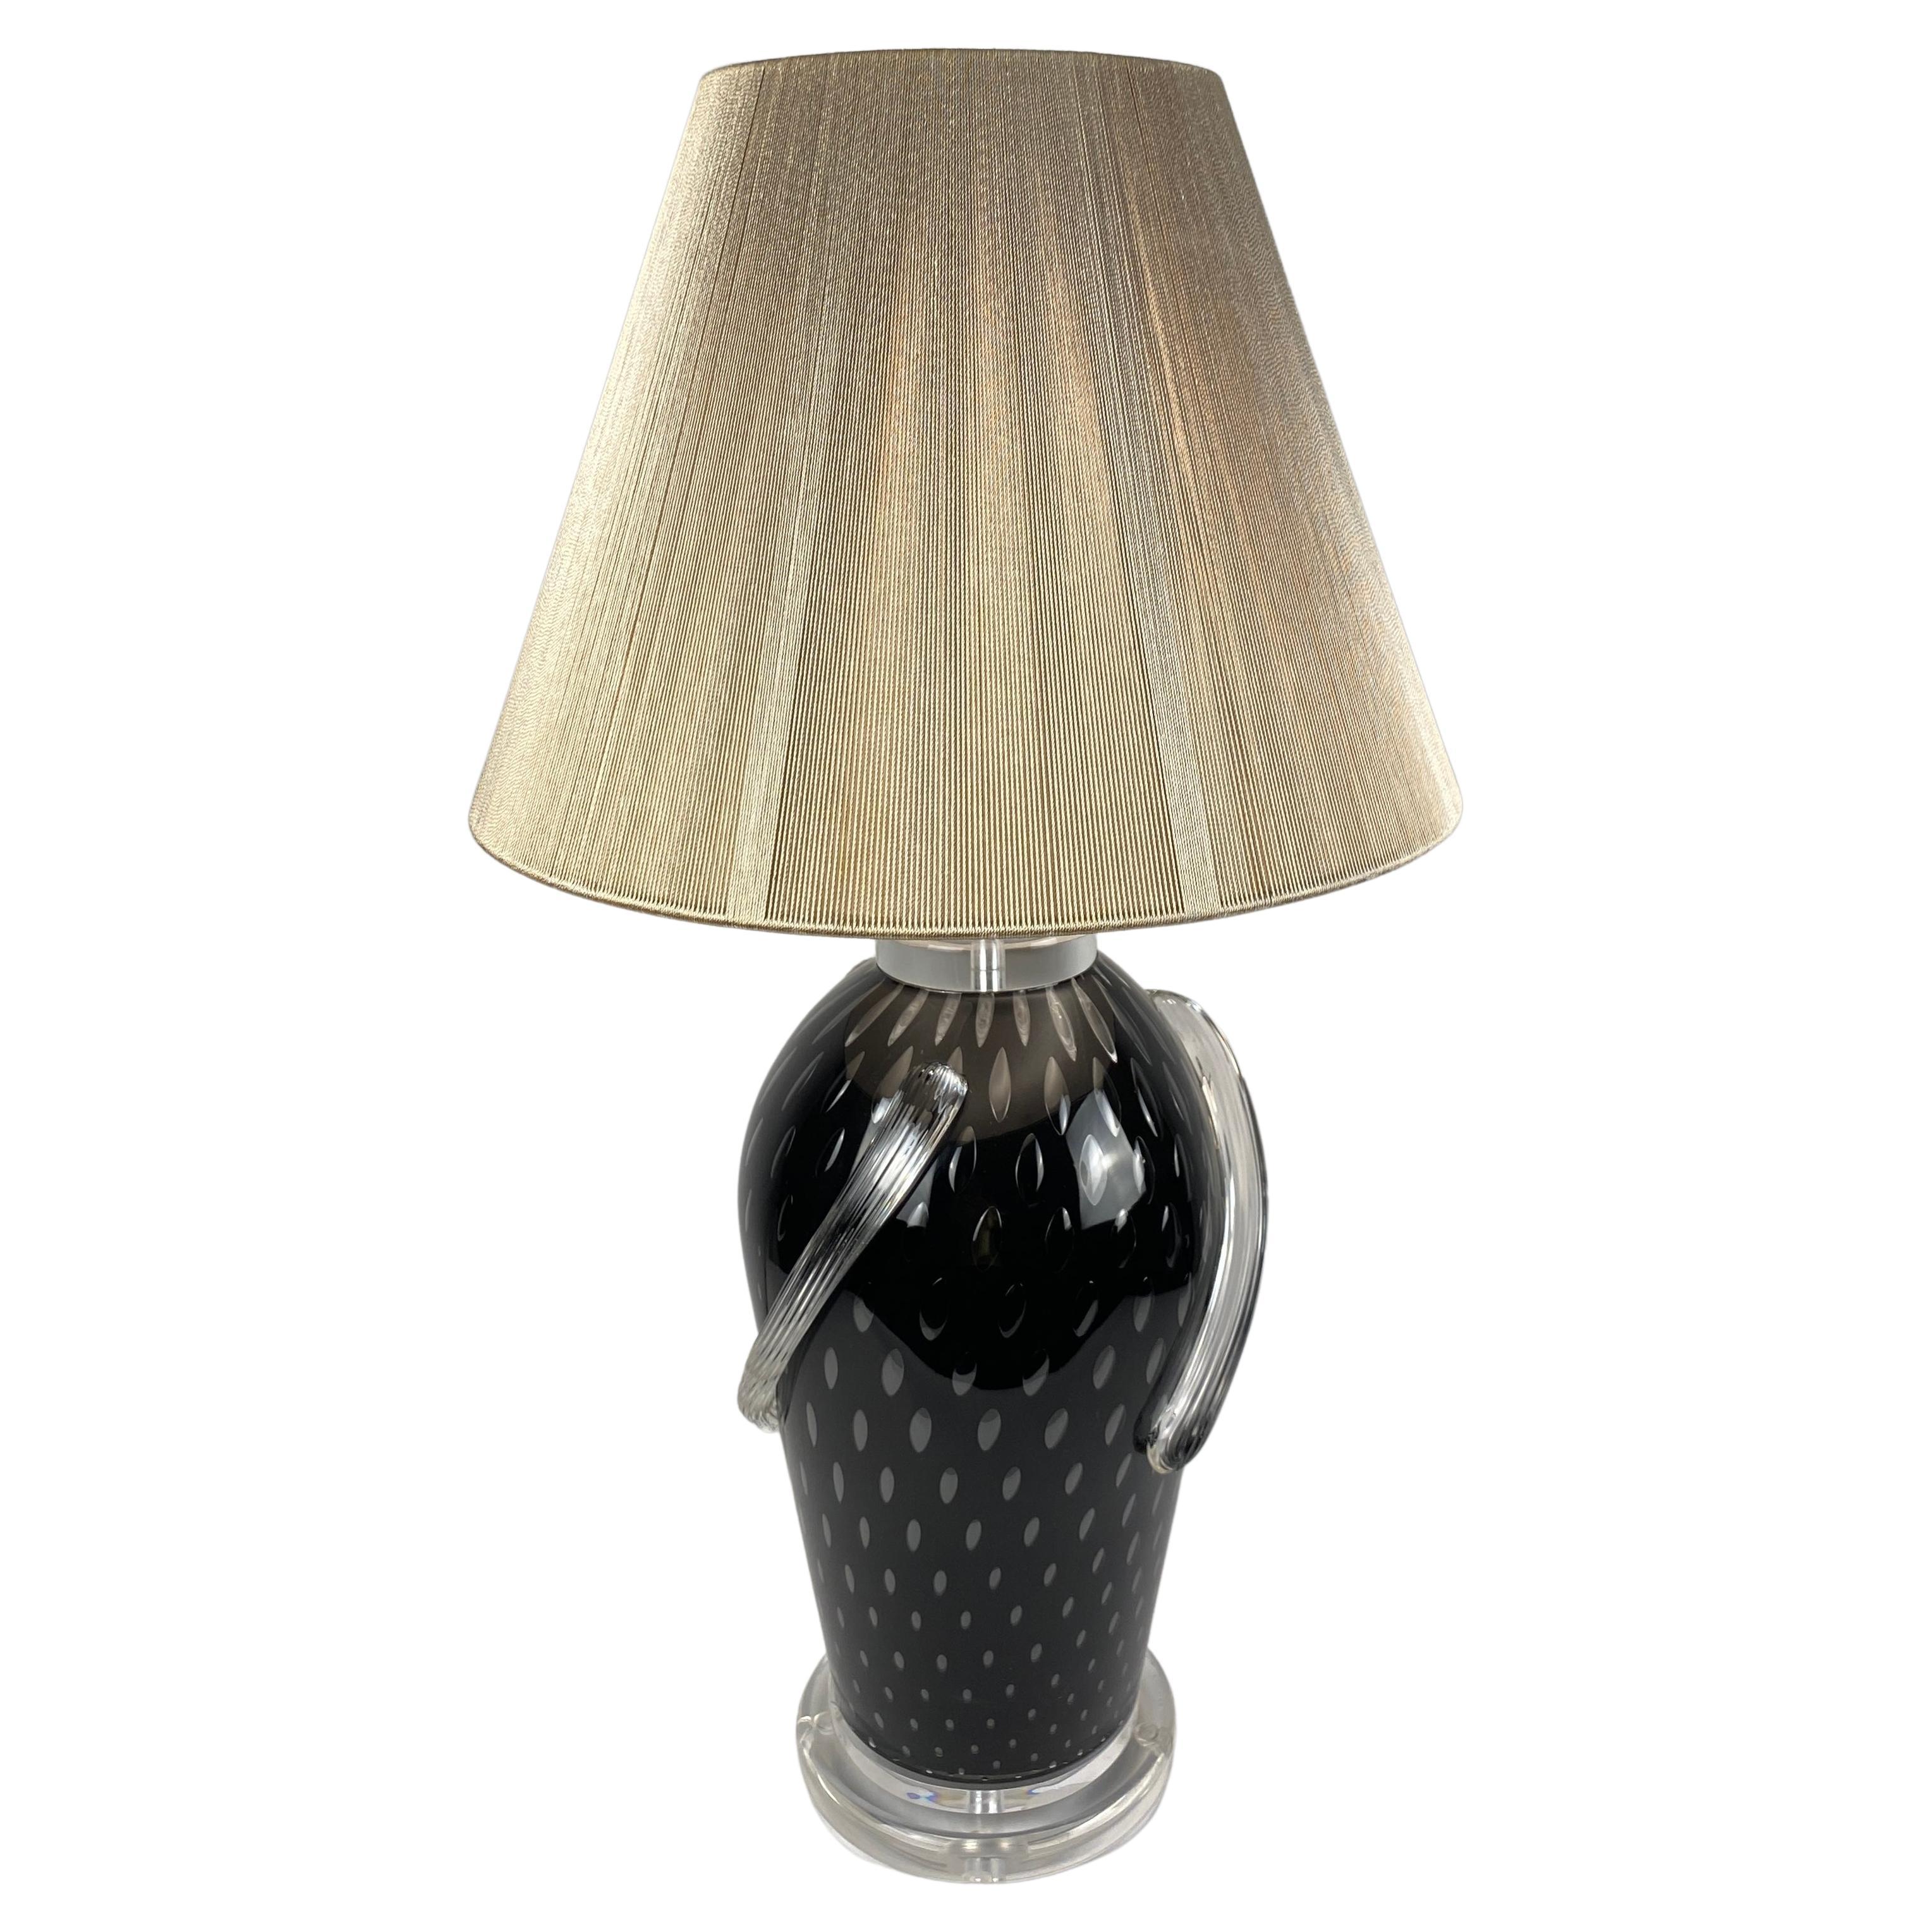 Murano Art Glass Table Lamp